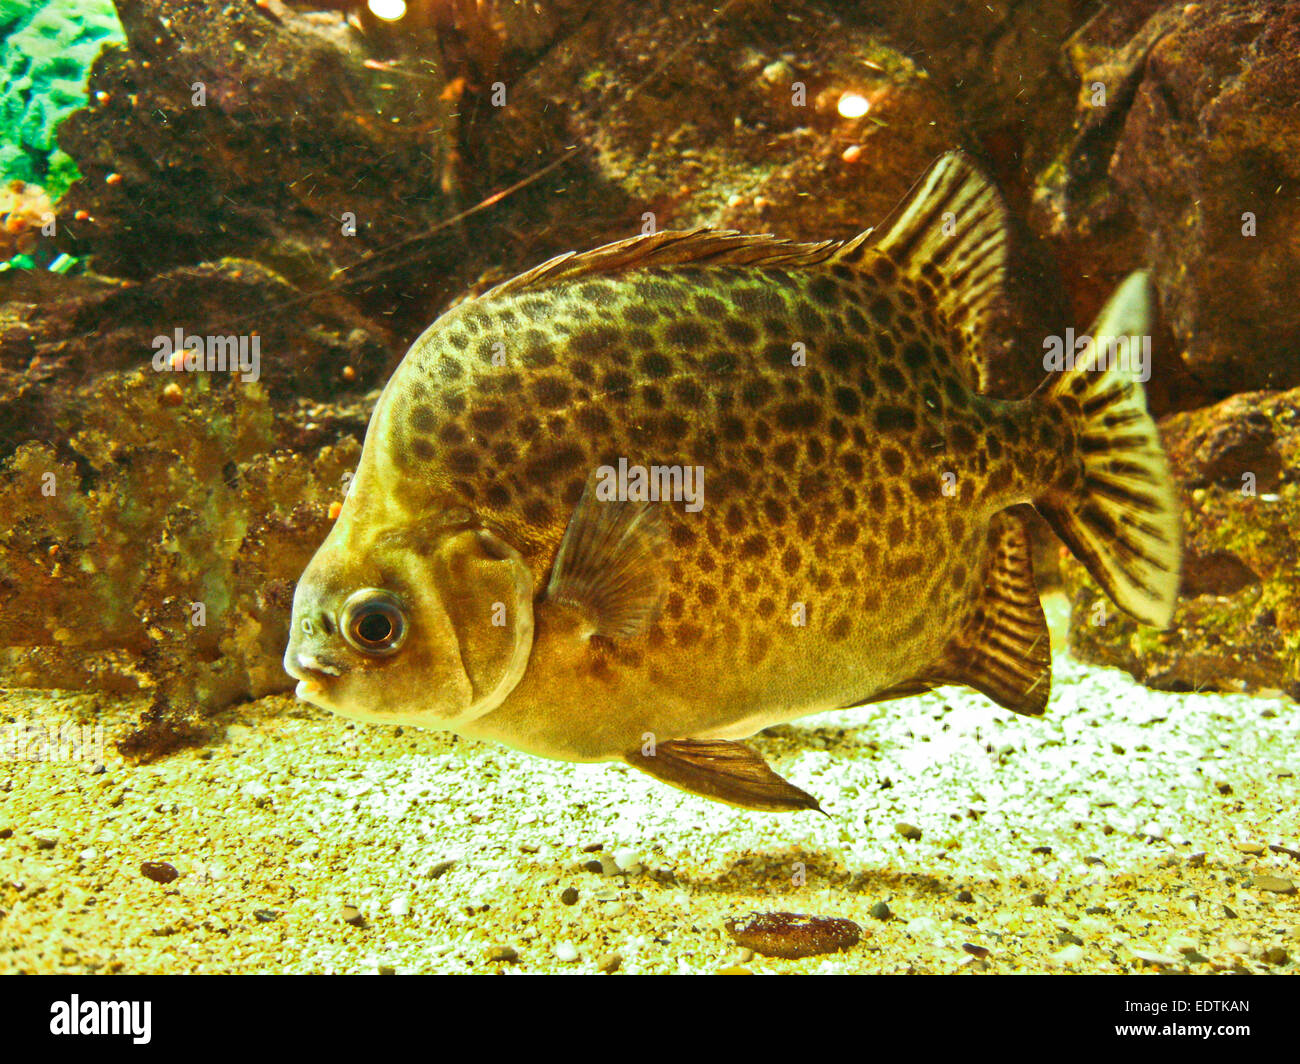 Tropical fish Scatophagus argus atromaclatus, recorded in aquarium. Stock Photo